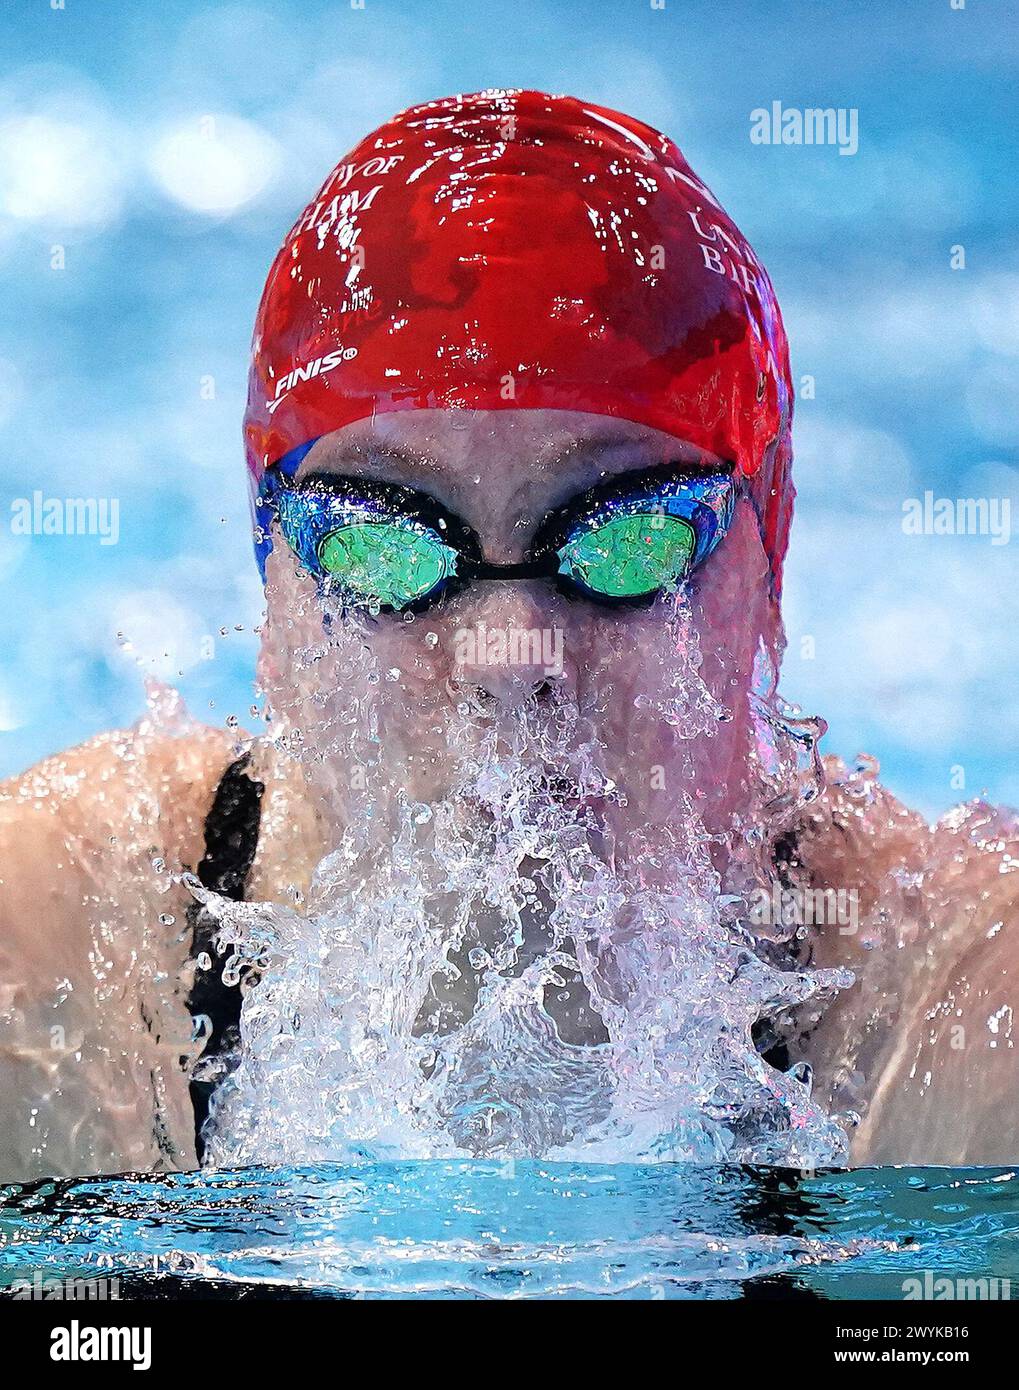 Nellie Clark in Aktion während der 100-m-Brustvorläufe der Frauen am 6. Tag der British Swimming Championships 2024 im London Aquatics Centre, London. Bilddatum: Samstag, 6. April 2024. Stockfoto